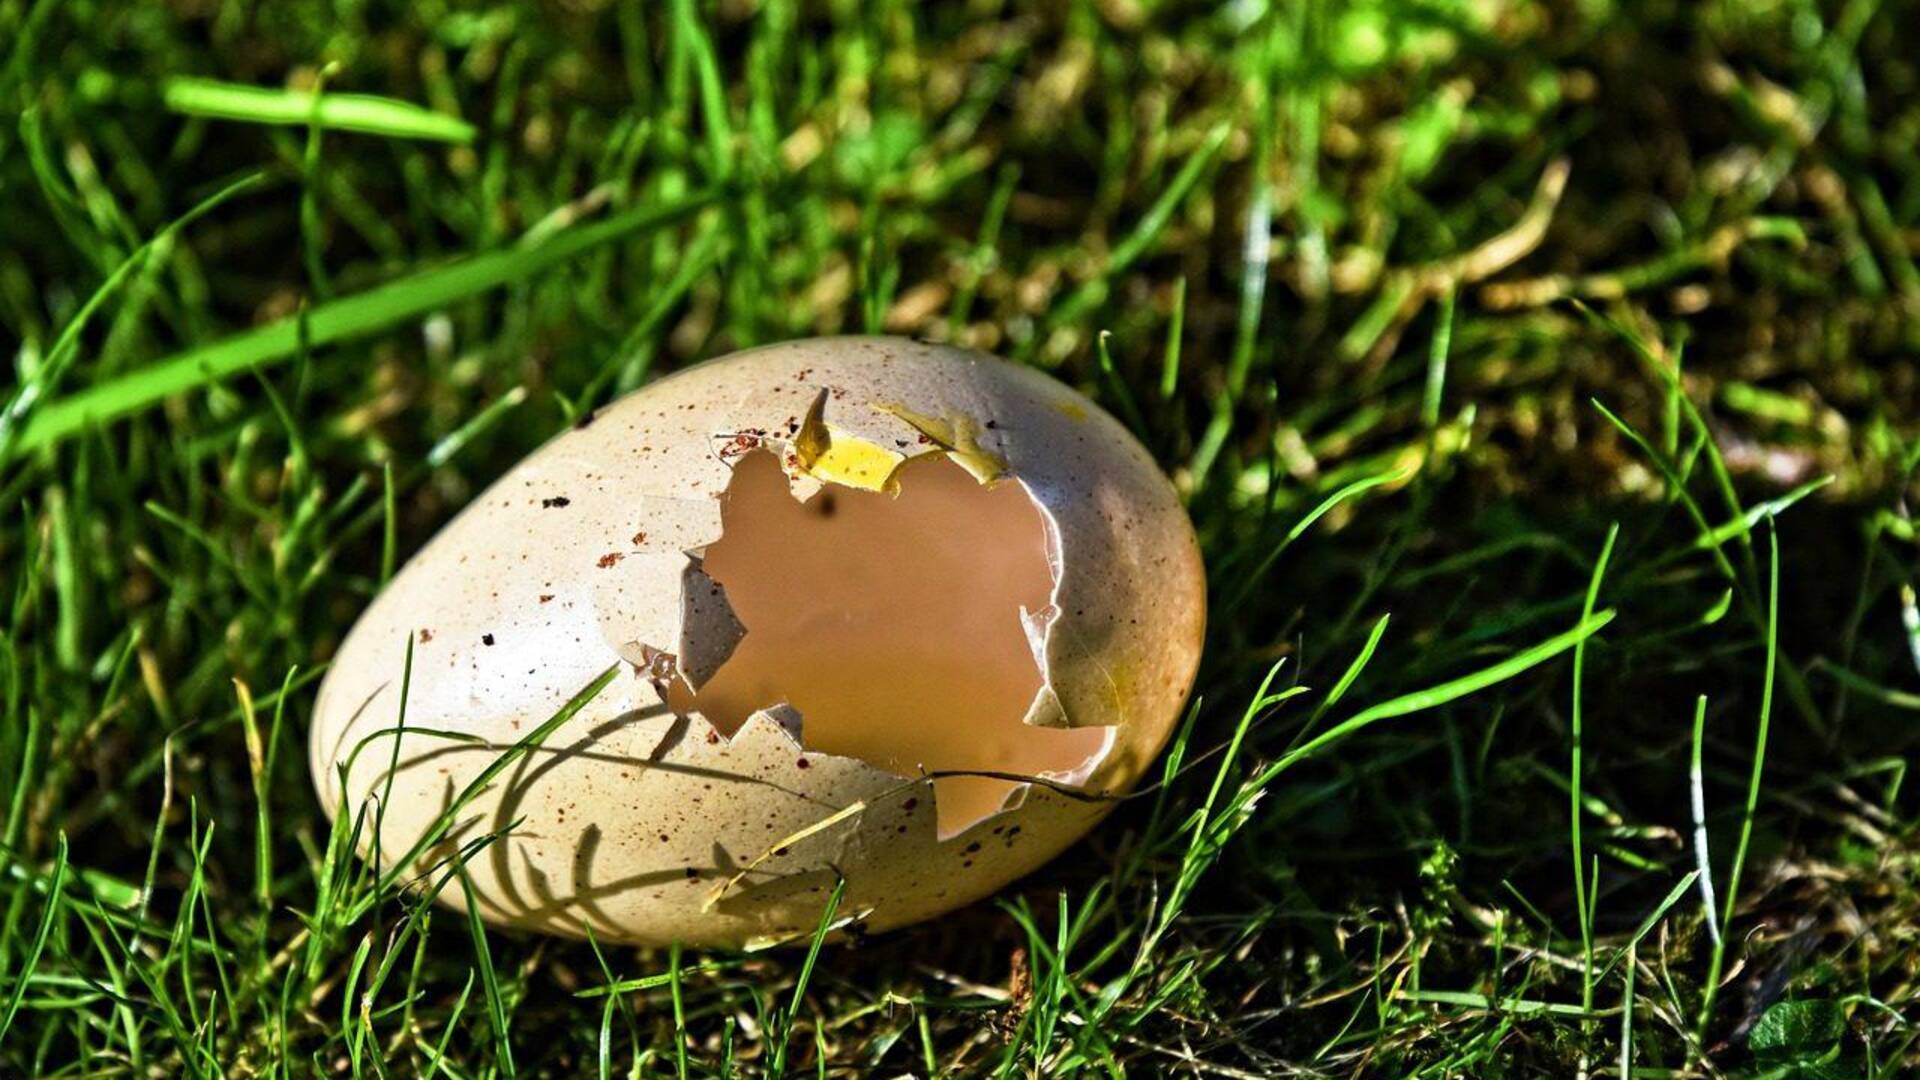 Lanci di uova in giardino. Bravata o dispetto contro i gatti? L’amarezza della vittima